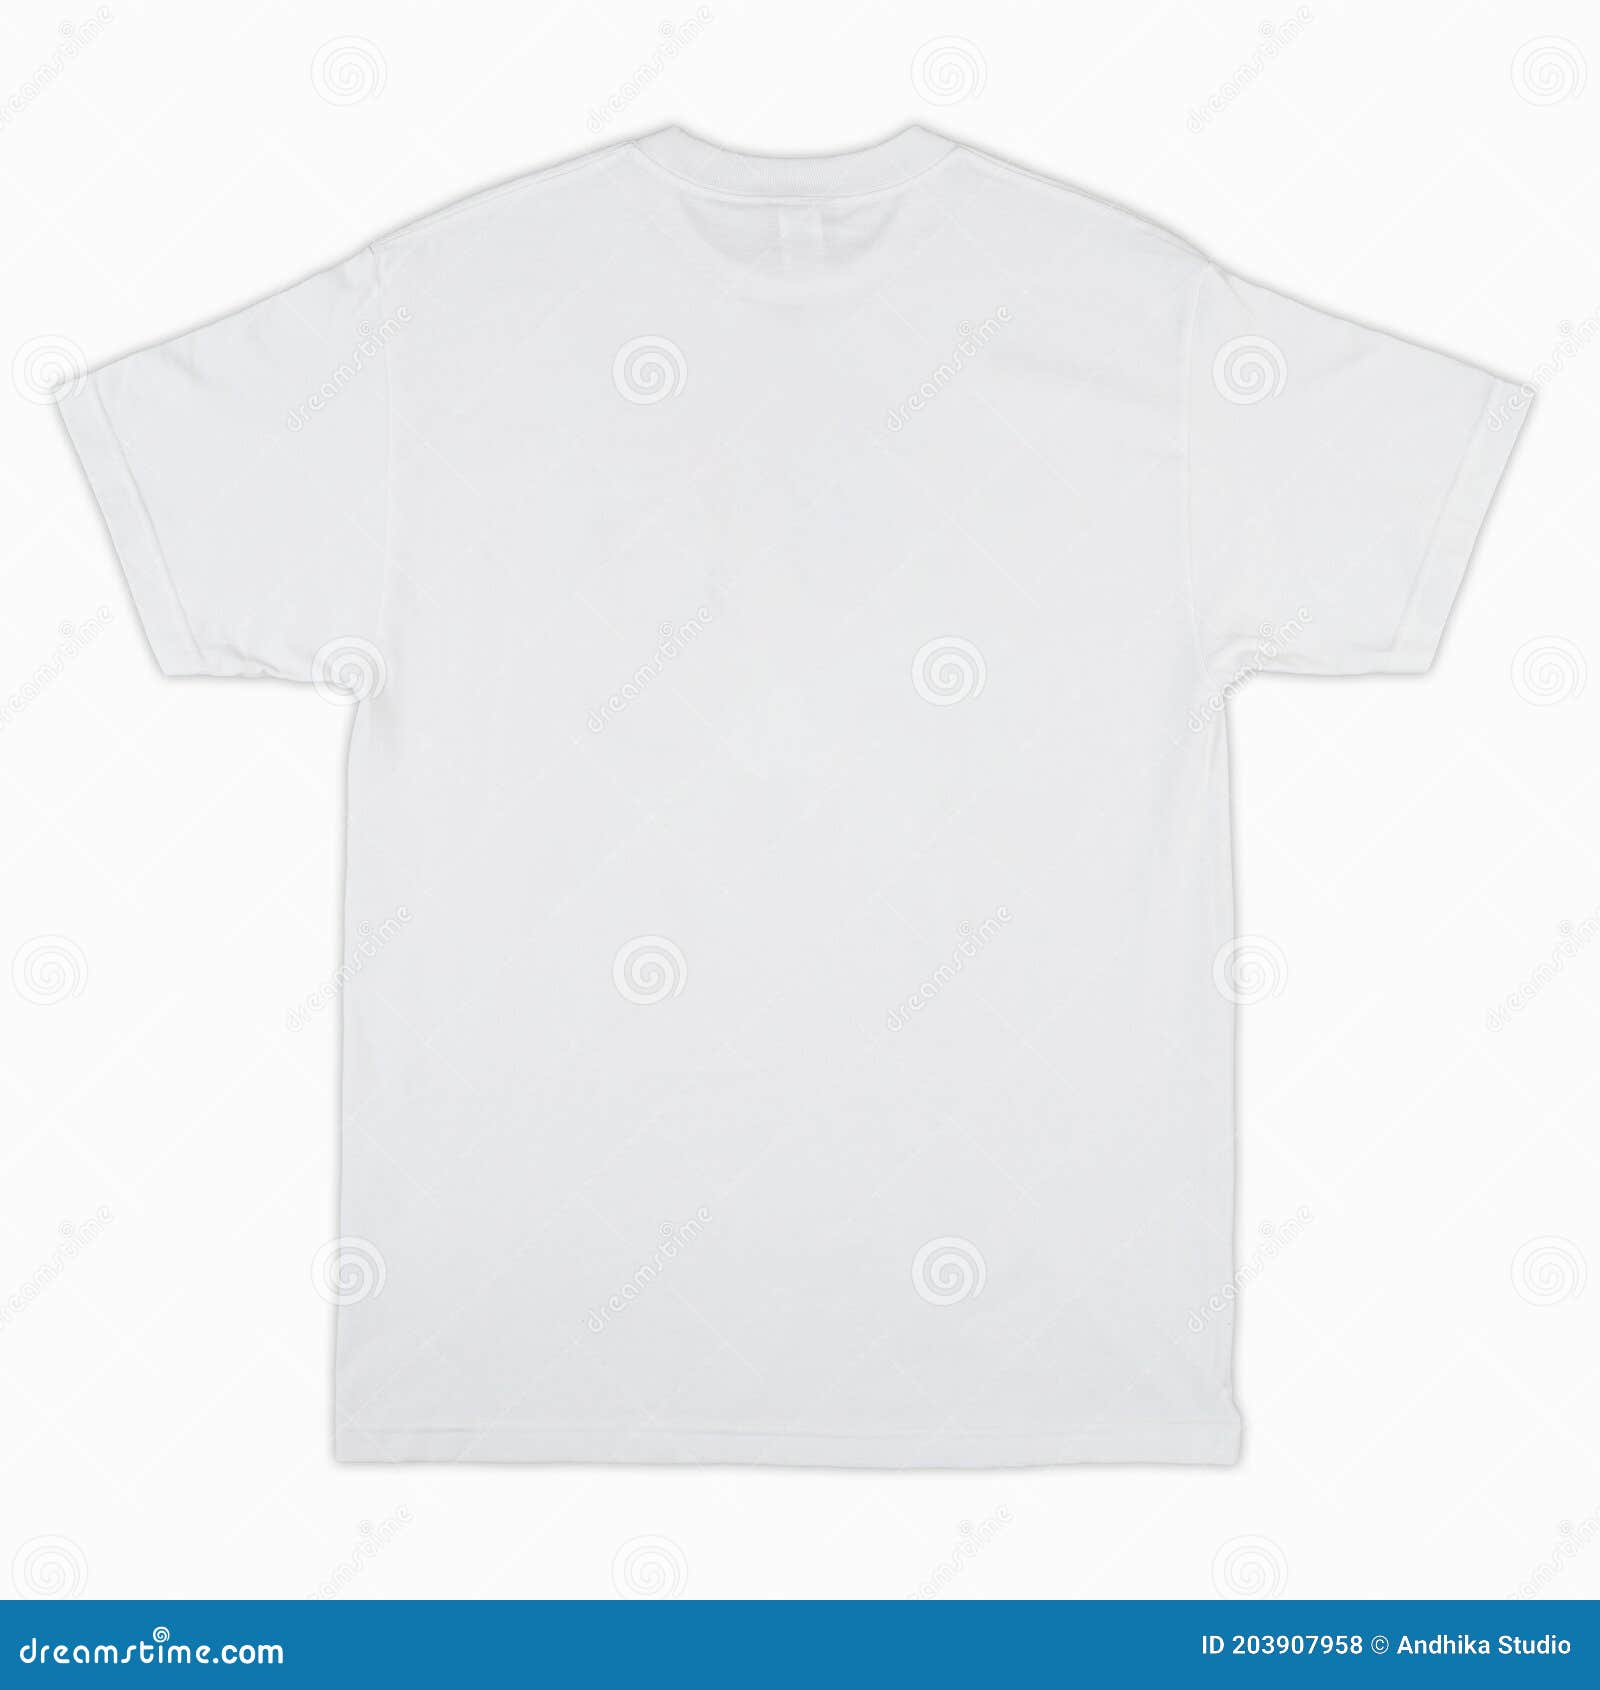 plain white shirt front